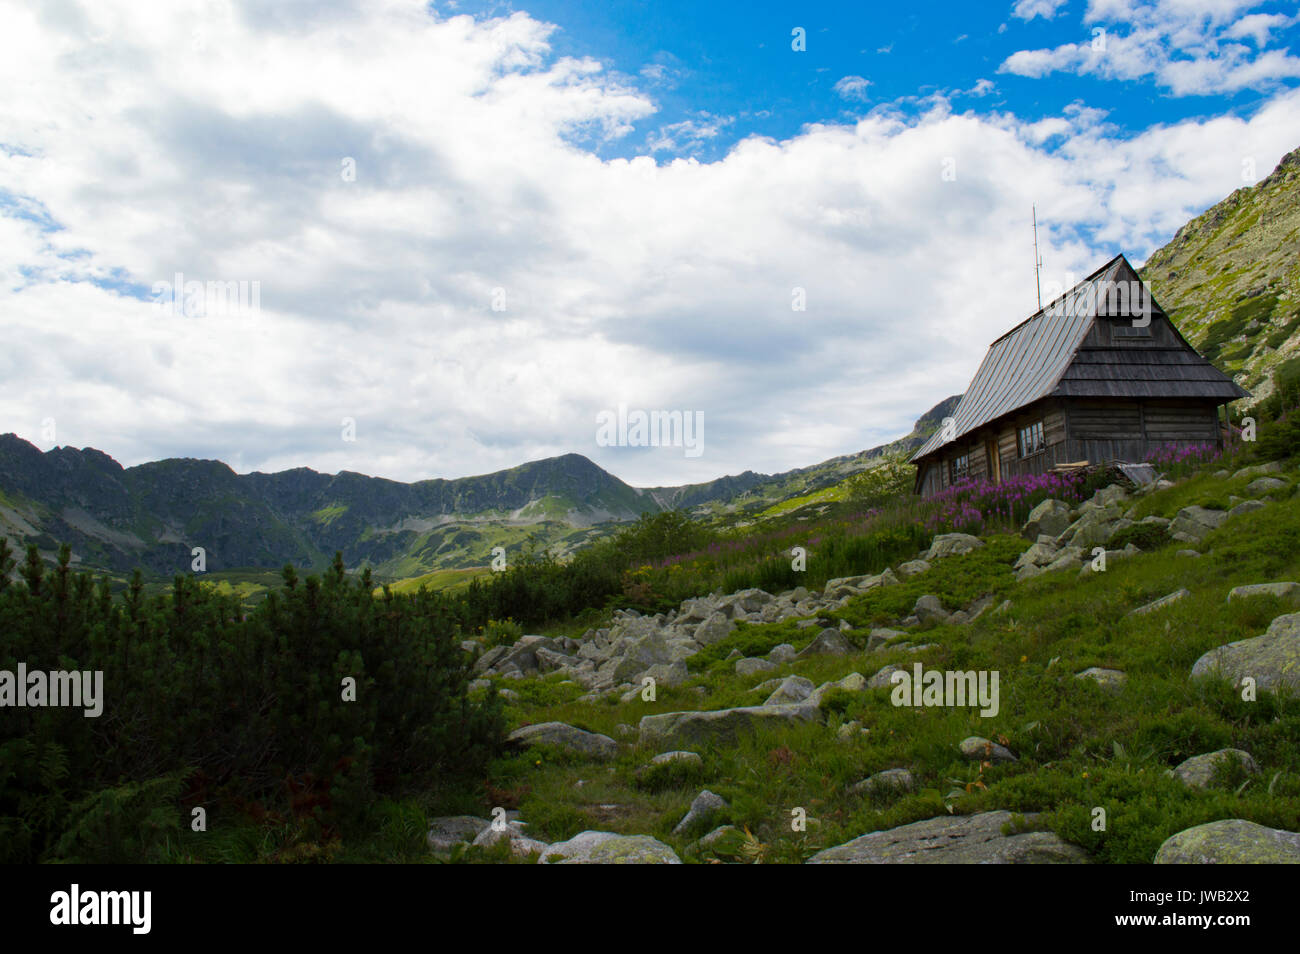 In the Tatra National Park, Poland Stock Photo